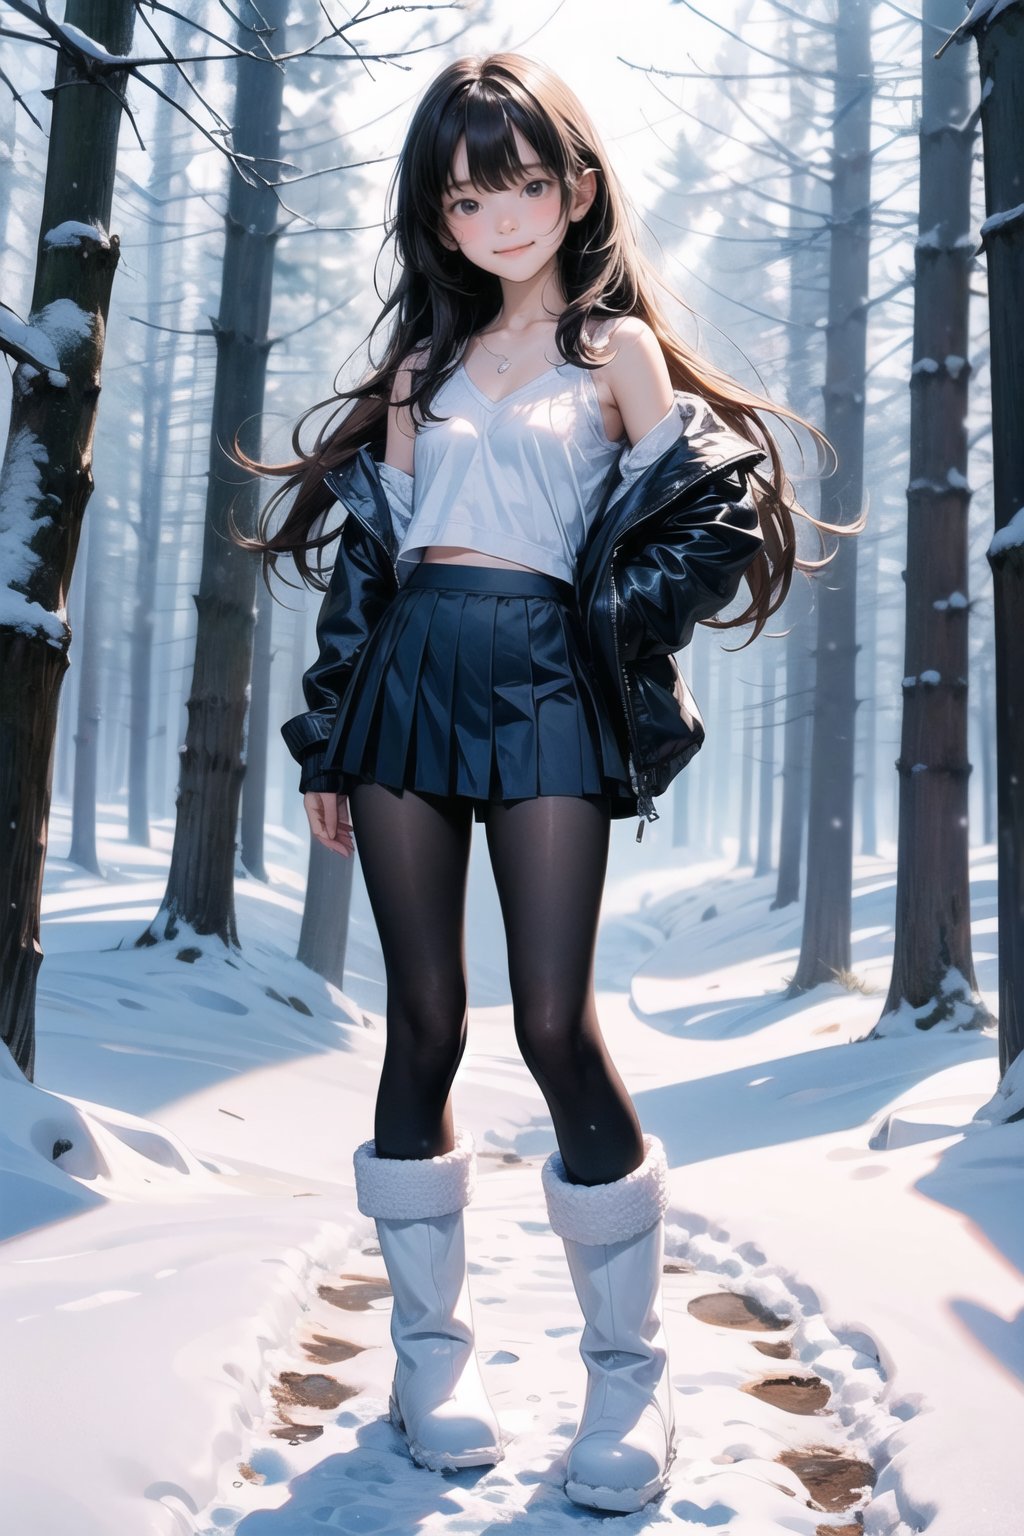 主：(foggy woods),((Full body image)),
人：1litte 1kid 7yo gril (Child:1.2),
體：(Beautiful little girly body proportions),(smaller body frame),
髮：(long hair),
服：(Student uniform), (mini pleated skirt),(black compression tights), (((snow boots))),(deep V neckline),